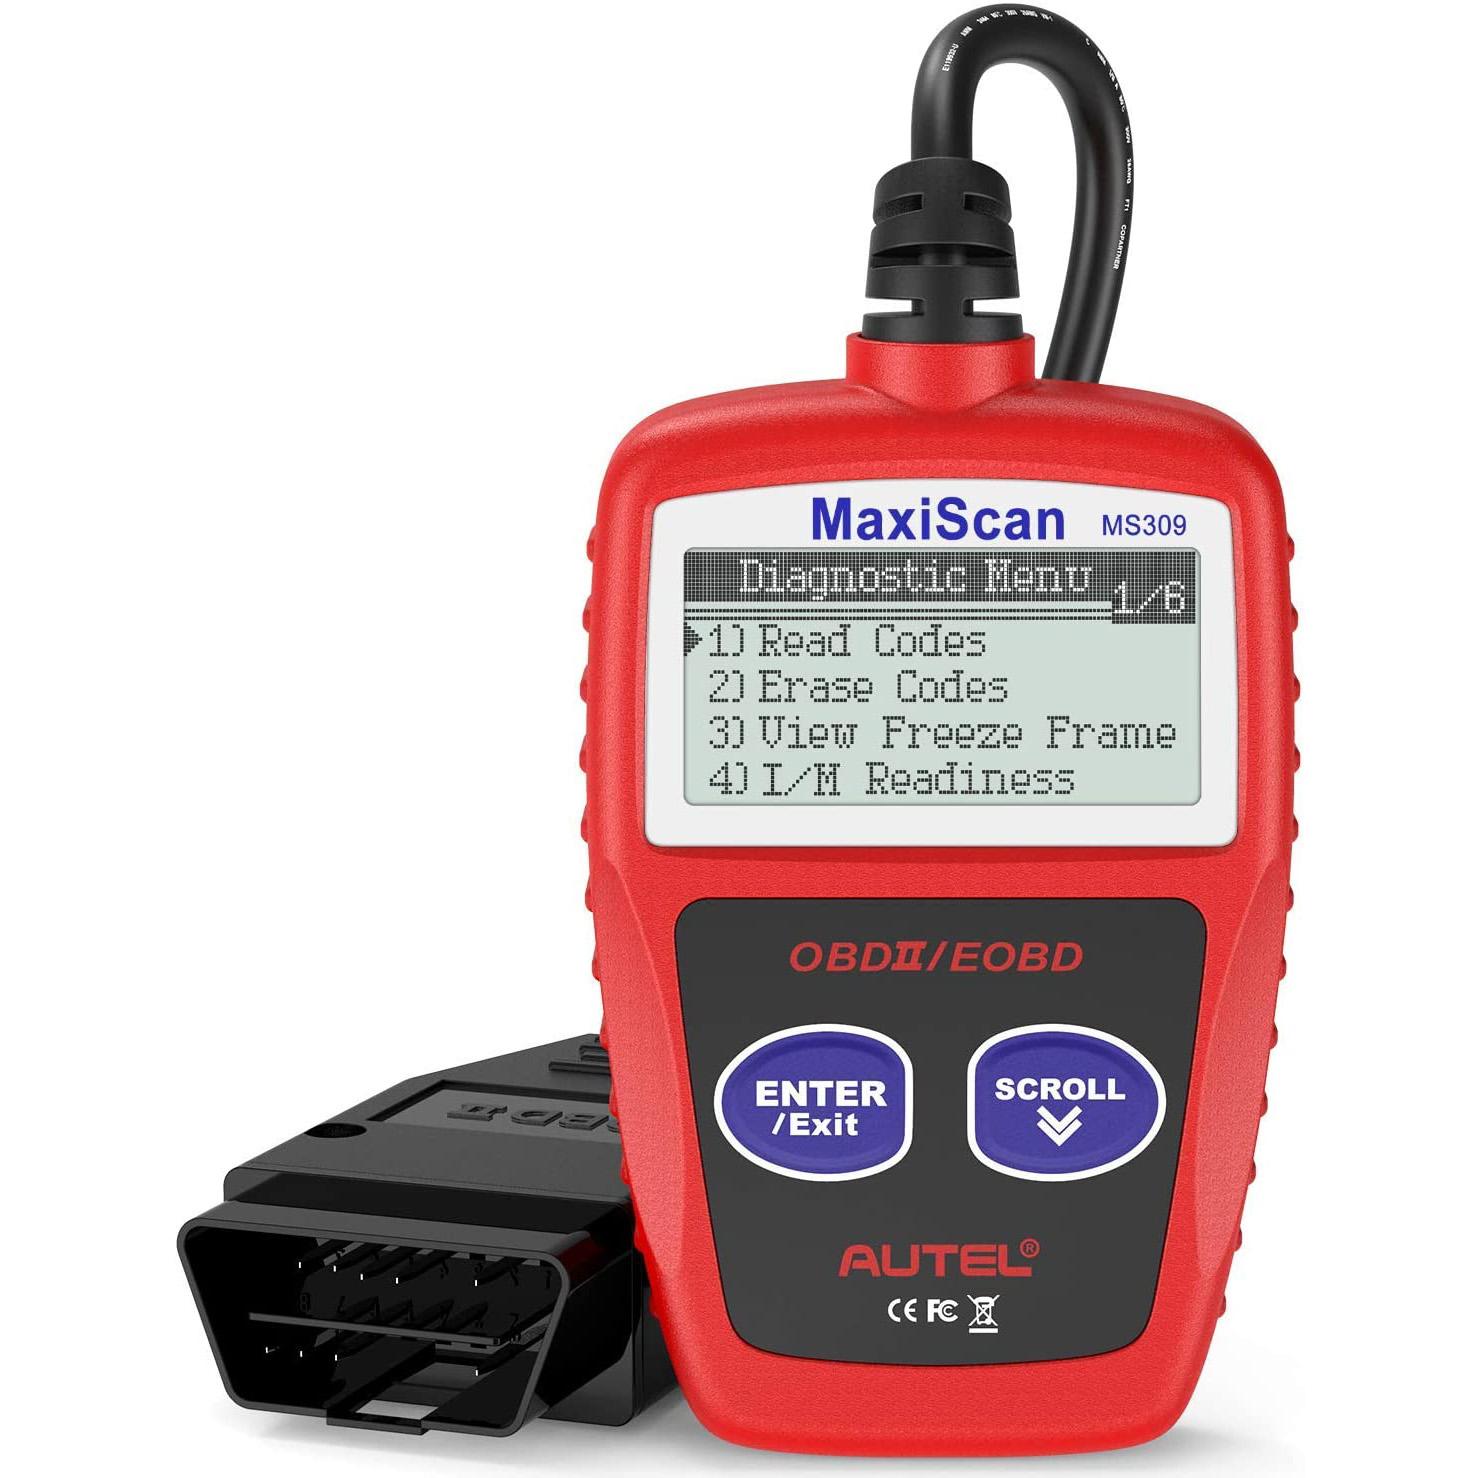 Autel MS309 OBD2 Car Diagnostic Scanner for $10.61